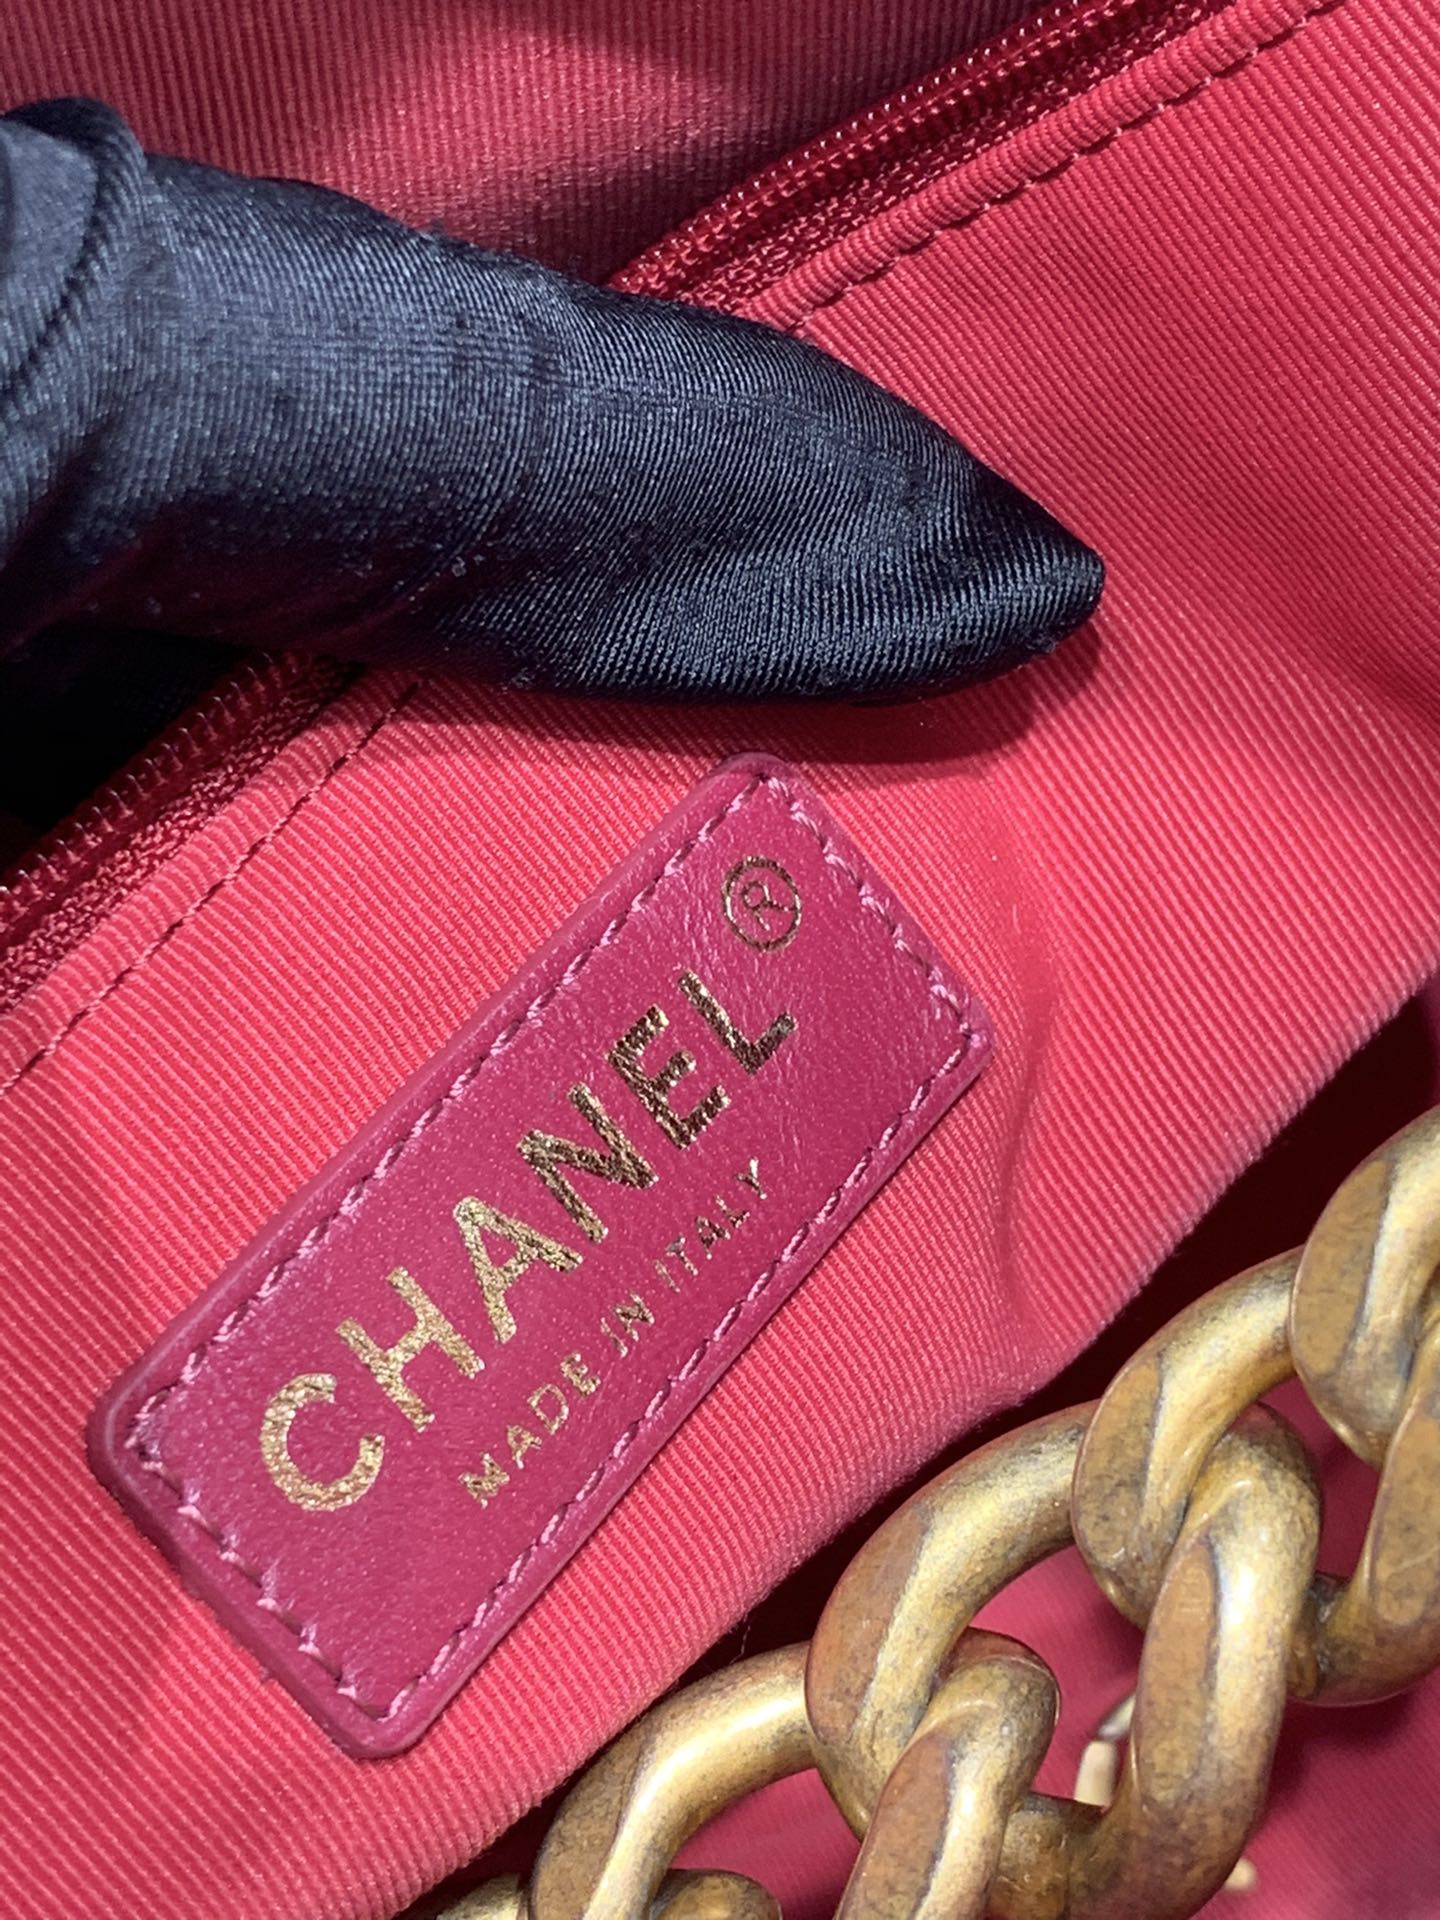 现货Chanel 21秋冬新款之痞帅嬉皮包 29×28×7cm 容量超大